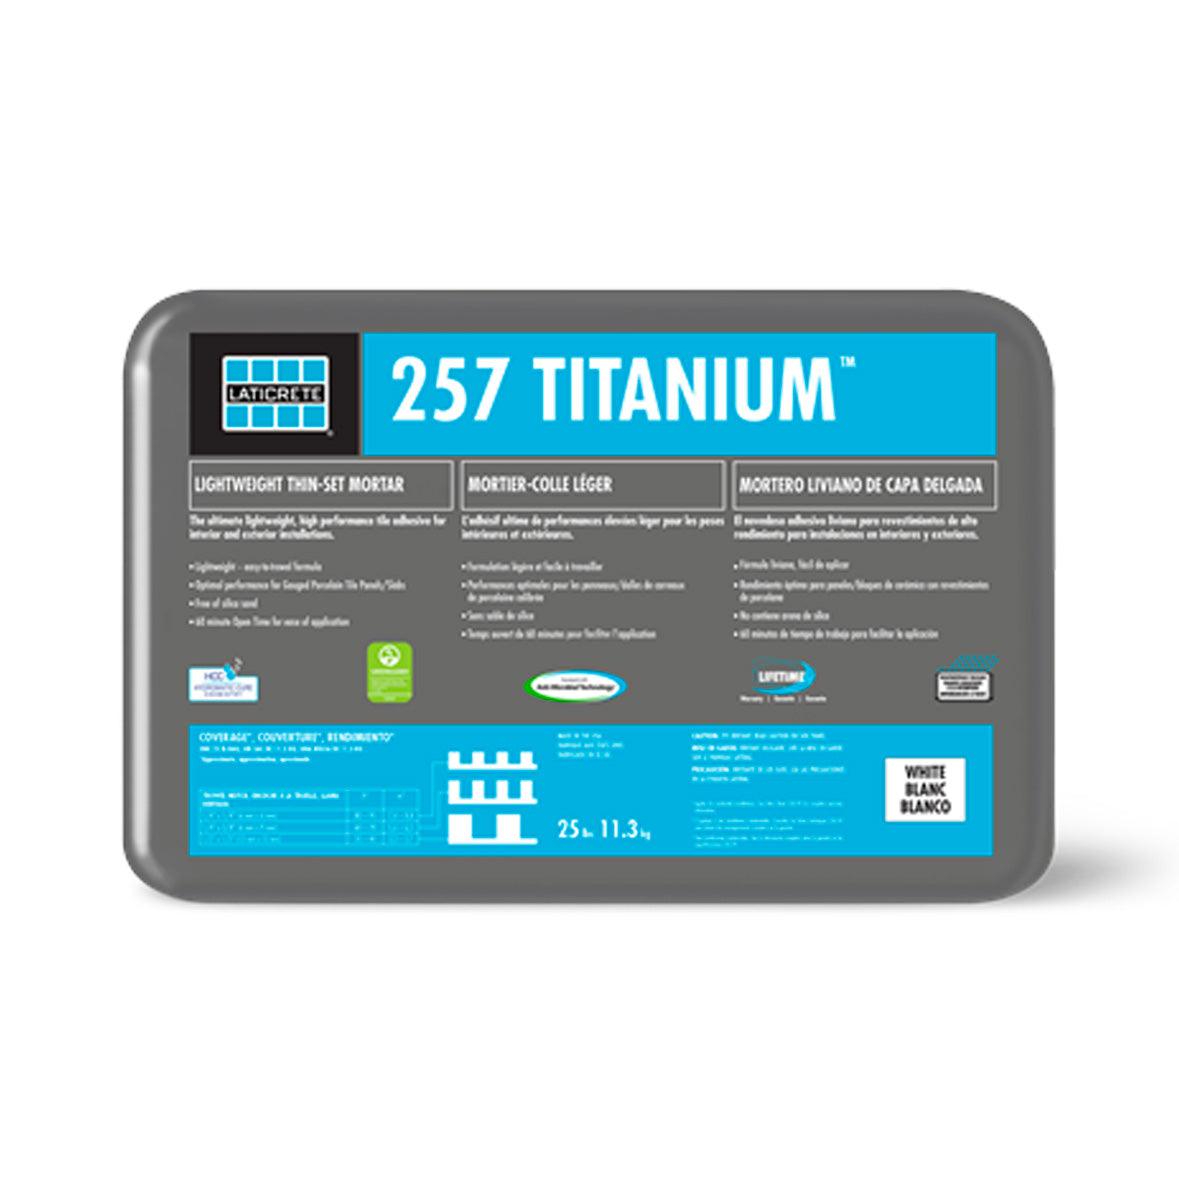 Thinset - Titanium 257 - Architessa